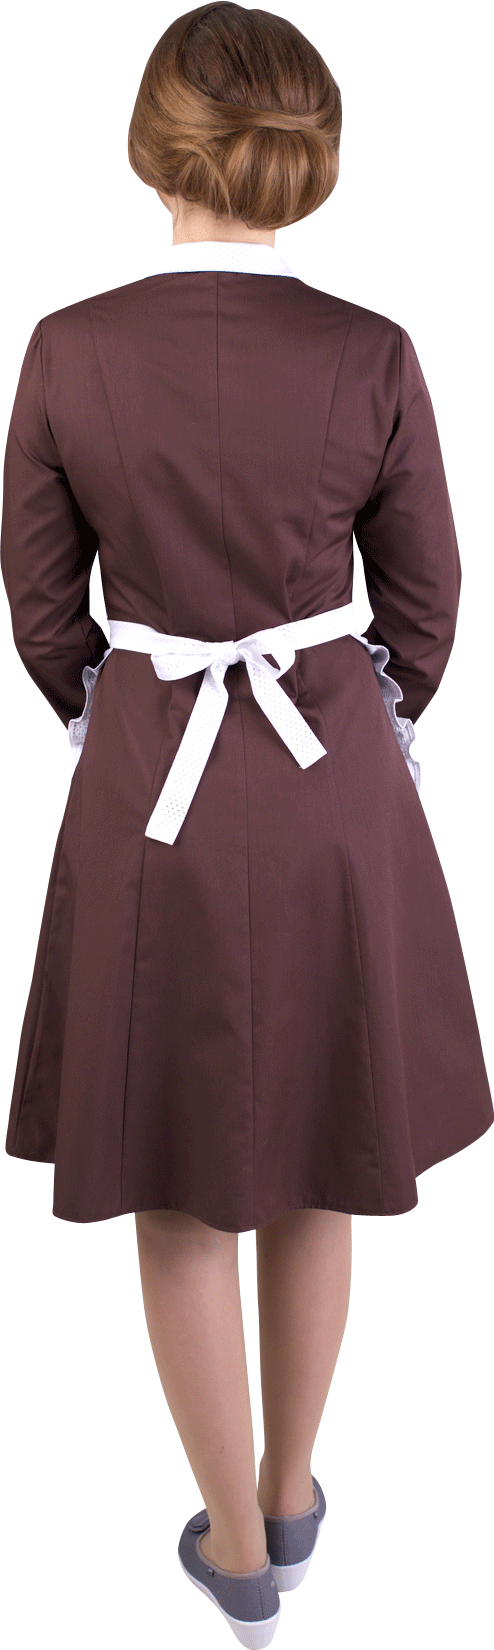 Платье с фартуком  210-01, 207-03